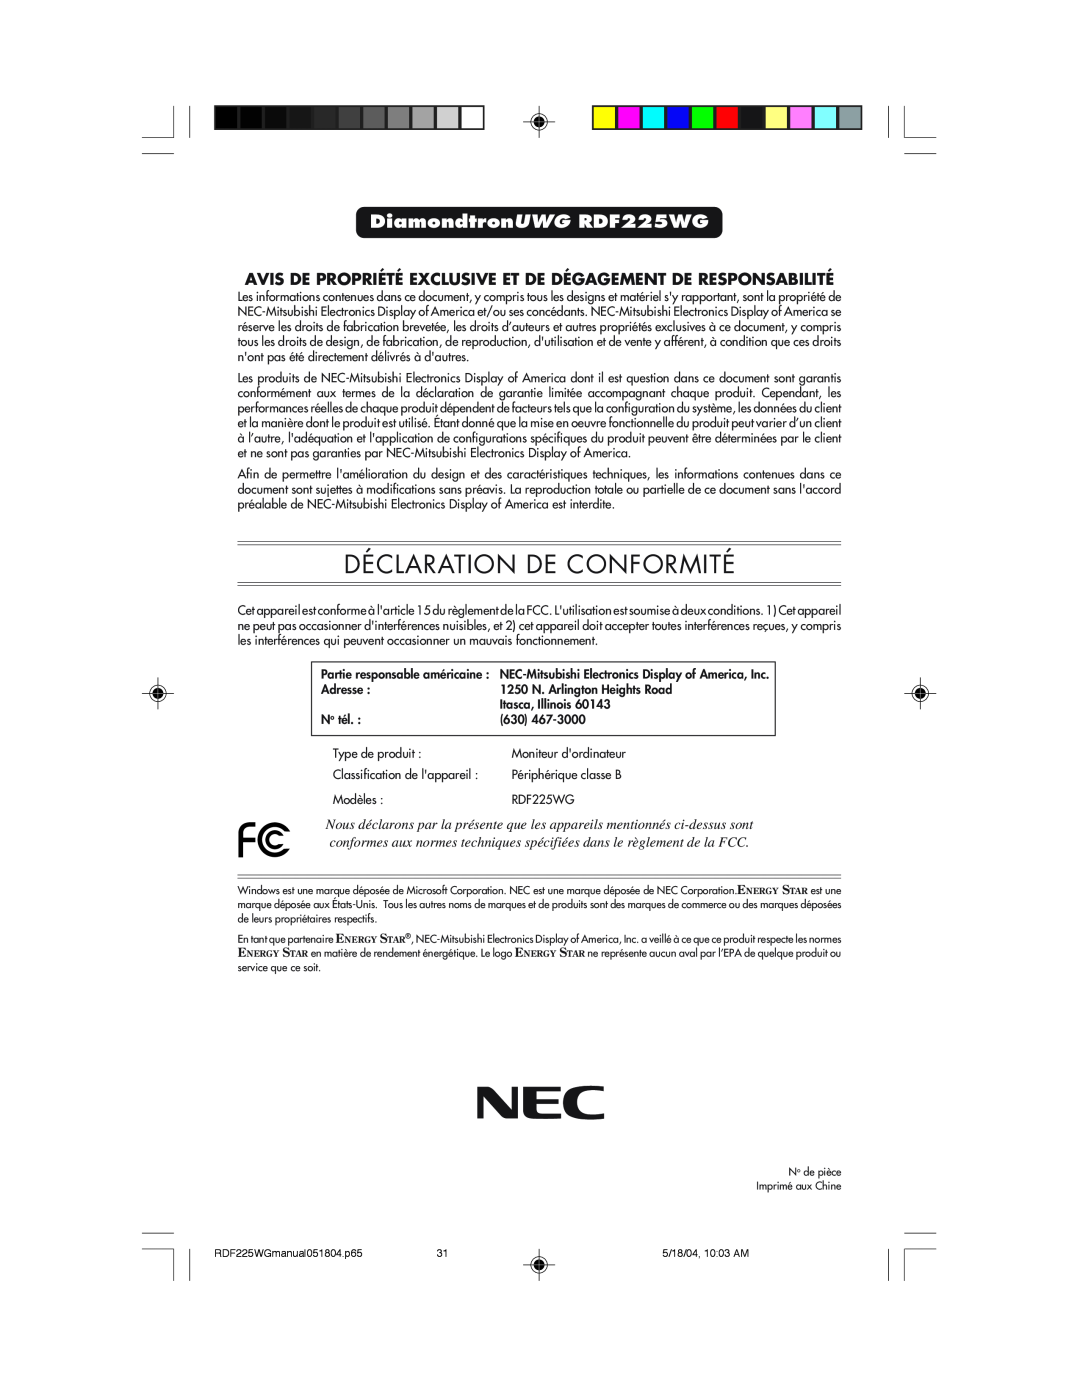 NEC Déclaration De Conformité, DiamondtronUWG RDF225WG, Avis De Propriété Exclusive Et De Dégagement De Responsabilité 